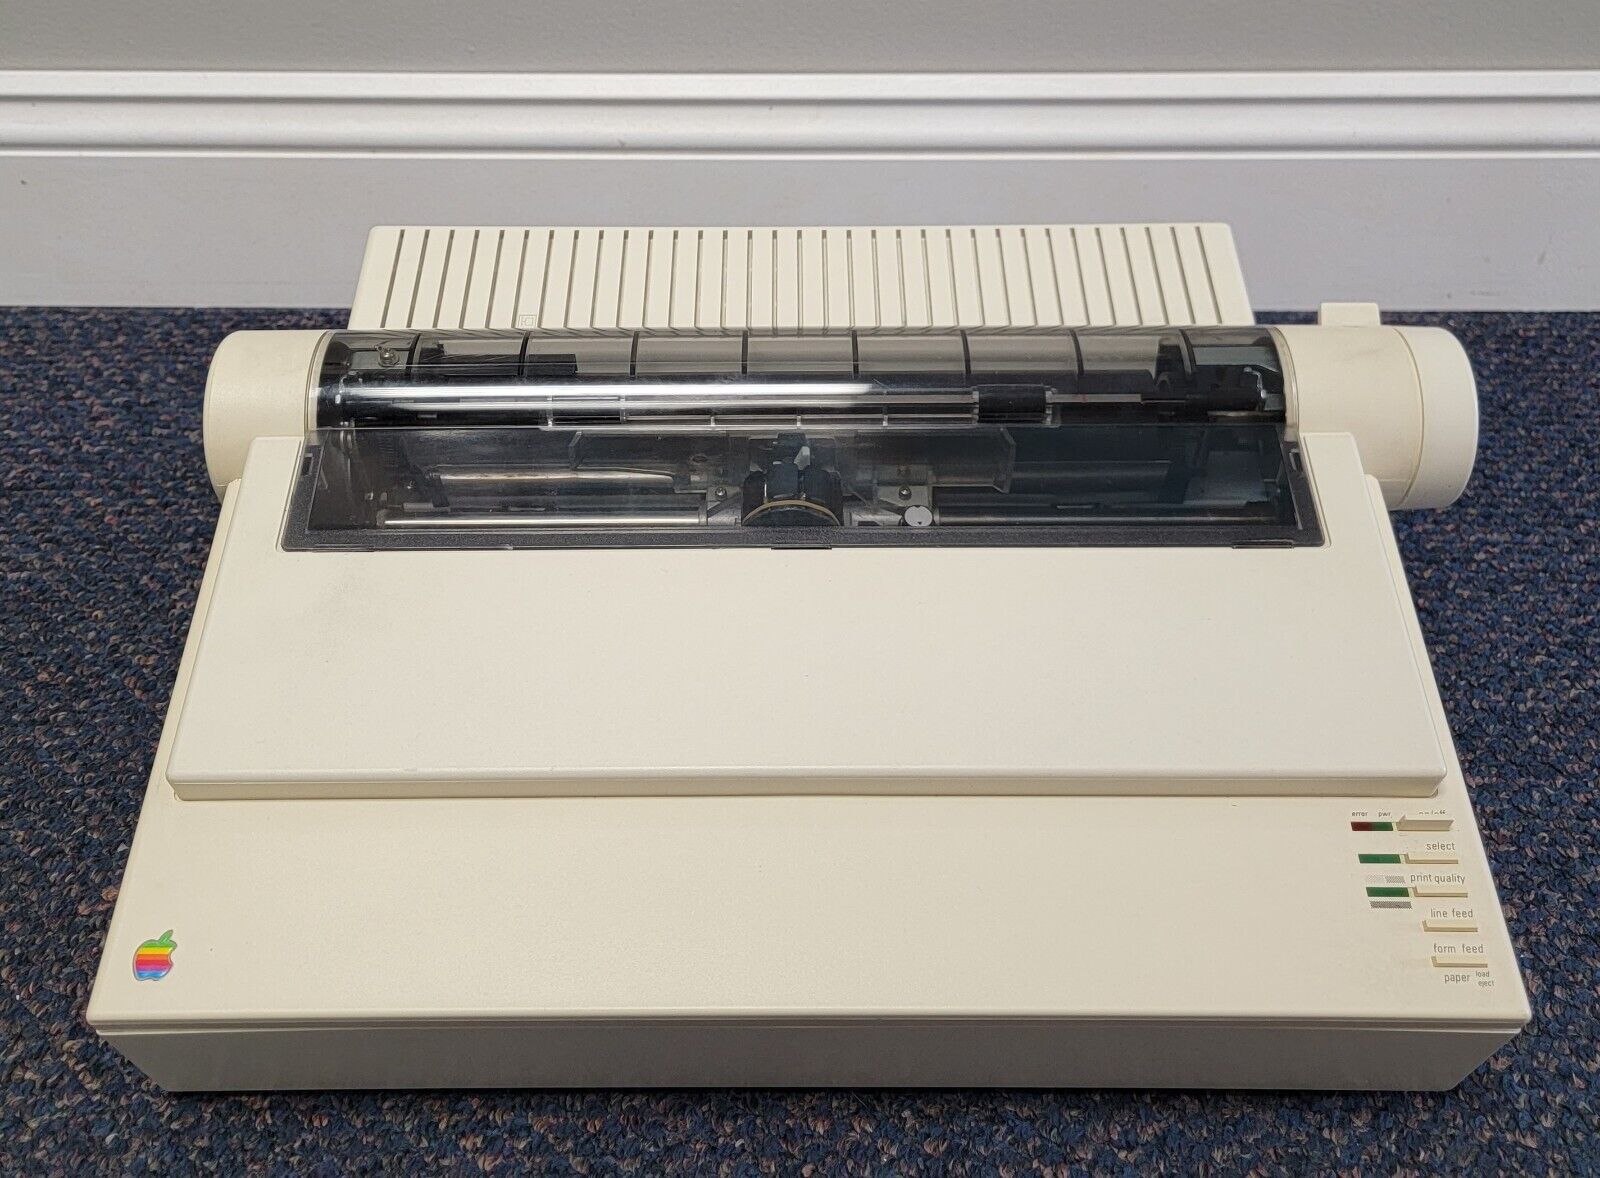 Apple ImageWriter II Printer A9M0320 Vintage Dot Matrix Printer Printing - A+